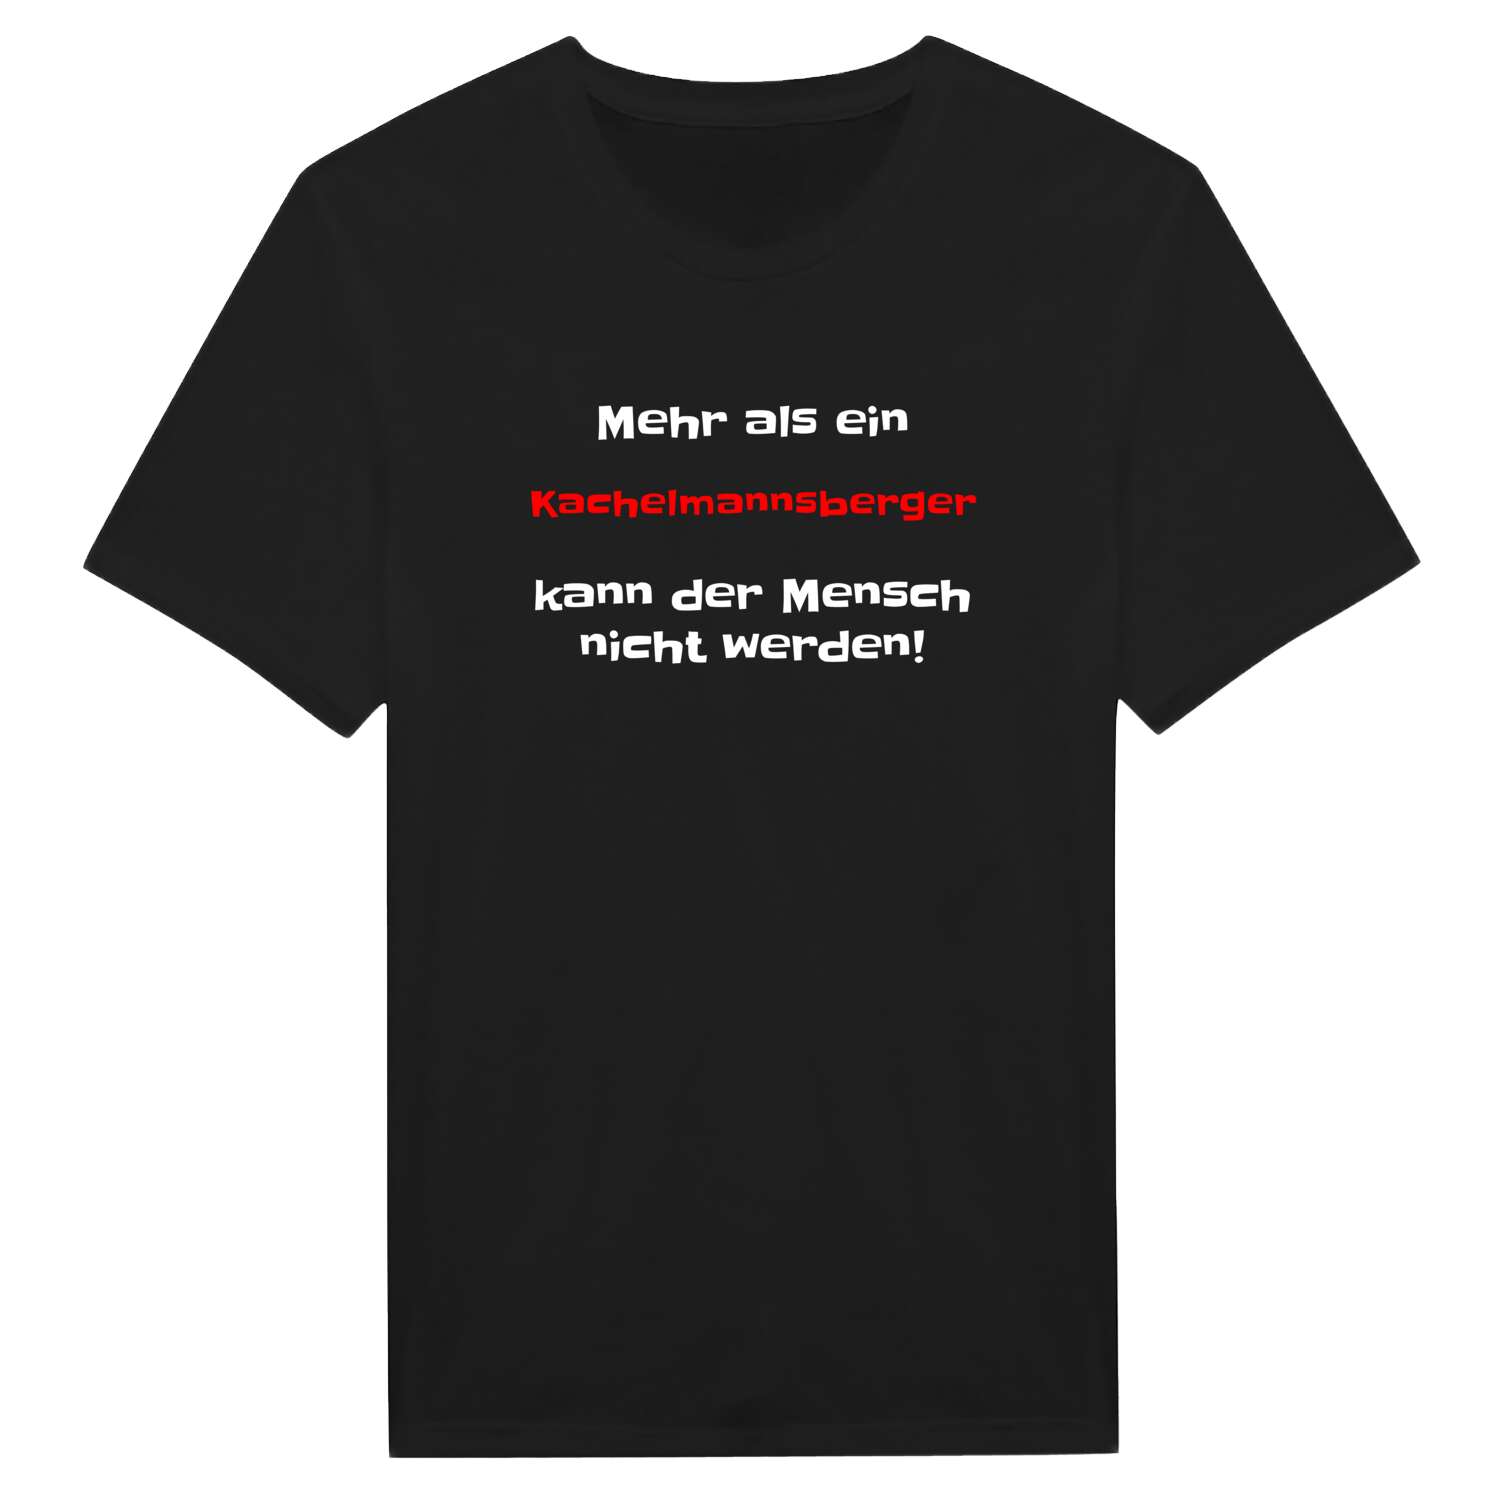 Kachelmannsberg T-Shirt »Mehr als ein«